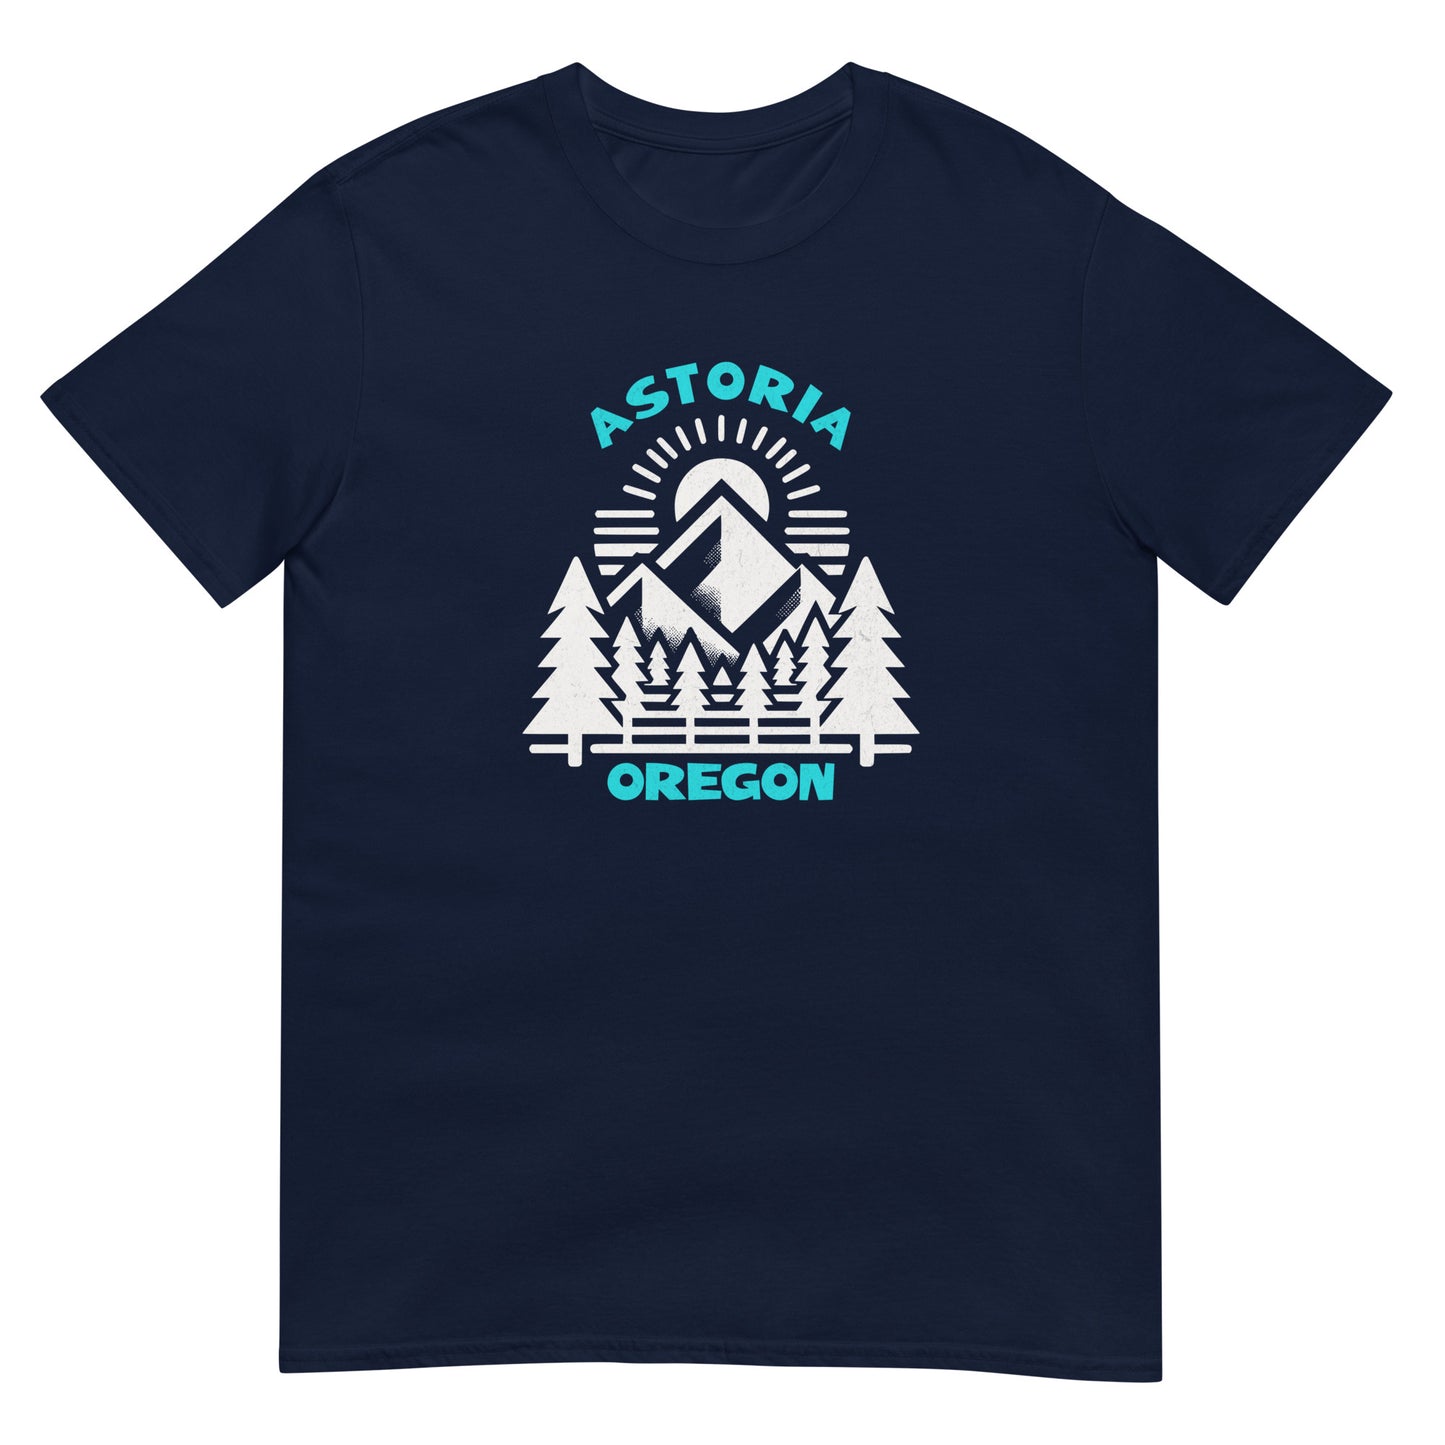 Astoria - Featured Cities - Short-Sleeve Unisex T-Shirt